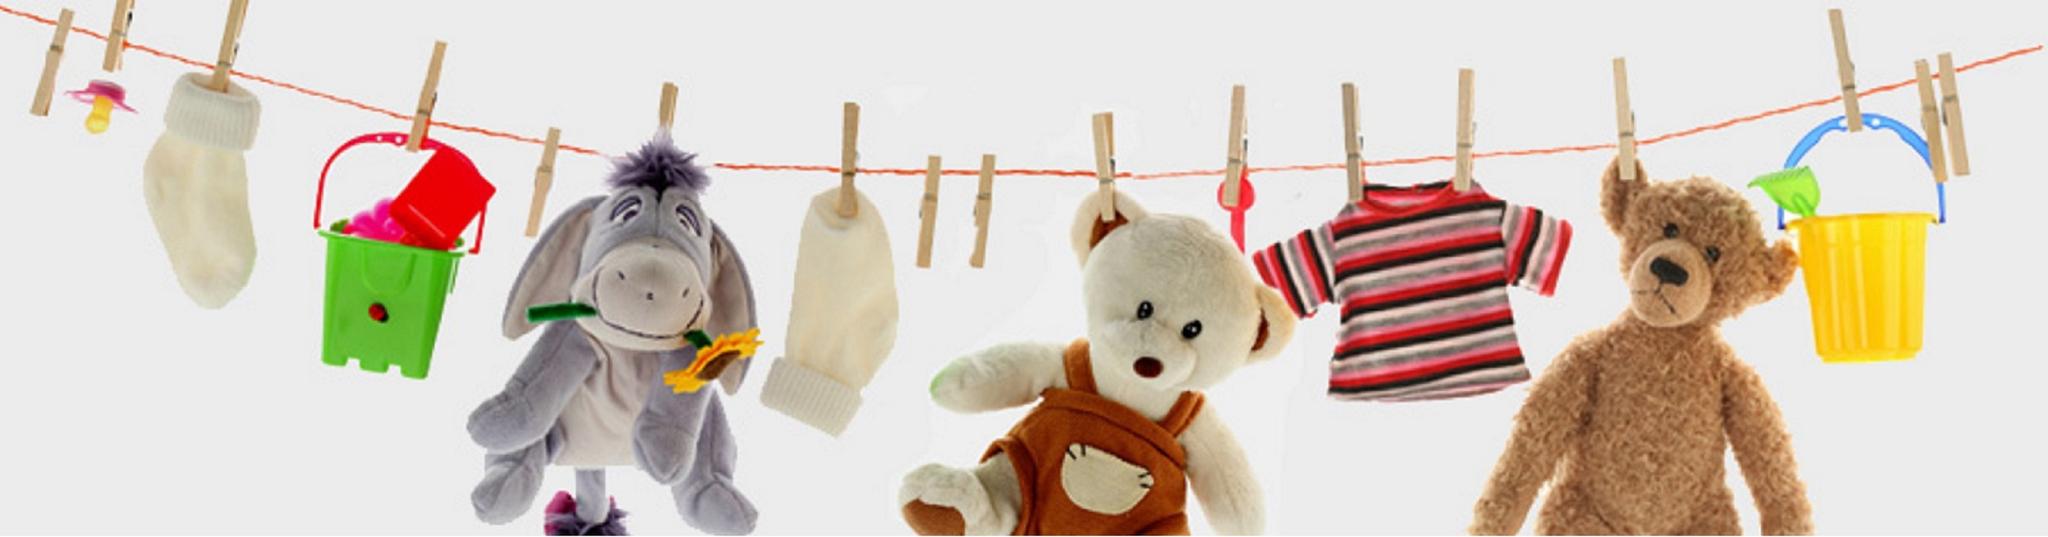 Toys vk. Товары для детей. Детские игрушки баннер. Игрушки и товары для детей. Мягкие игрушки баннер.